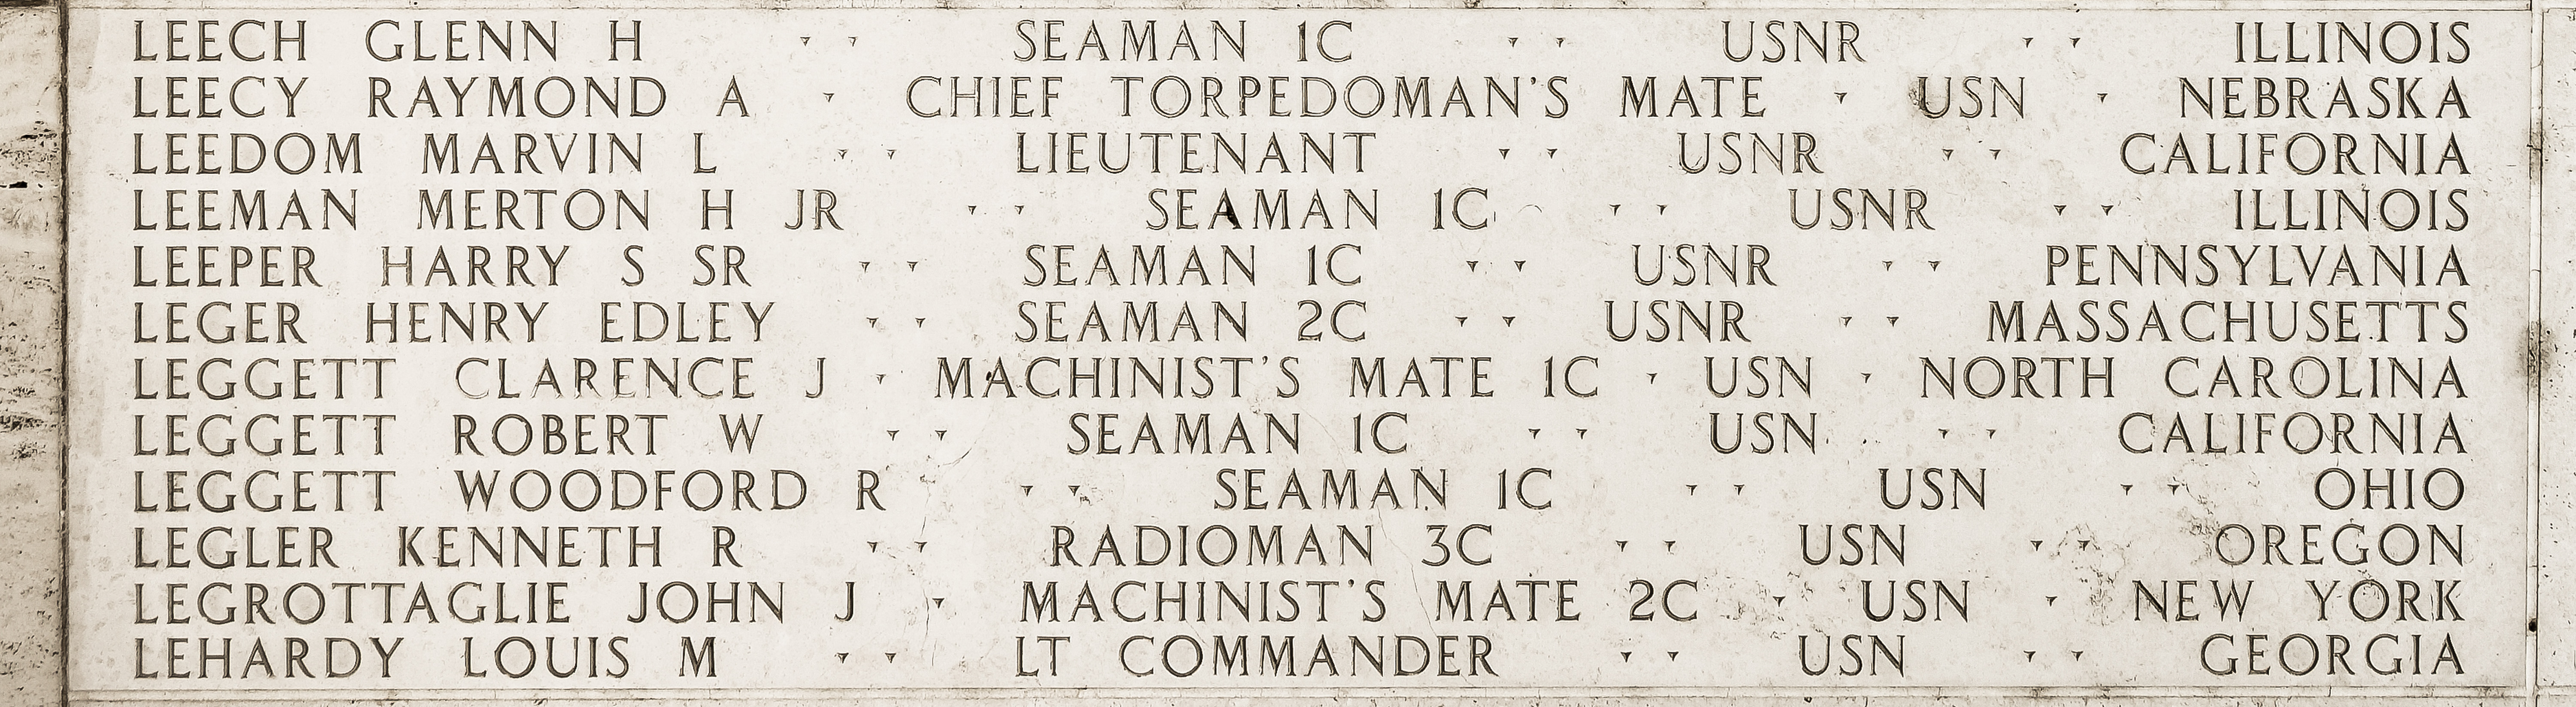 Merton H. Leeman, Seaman First Class